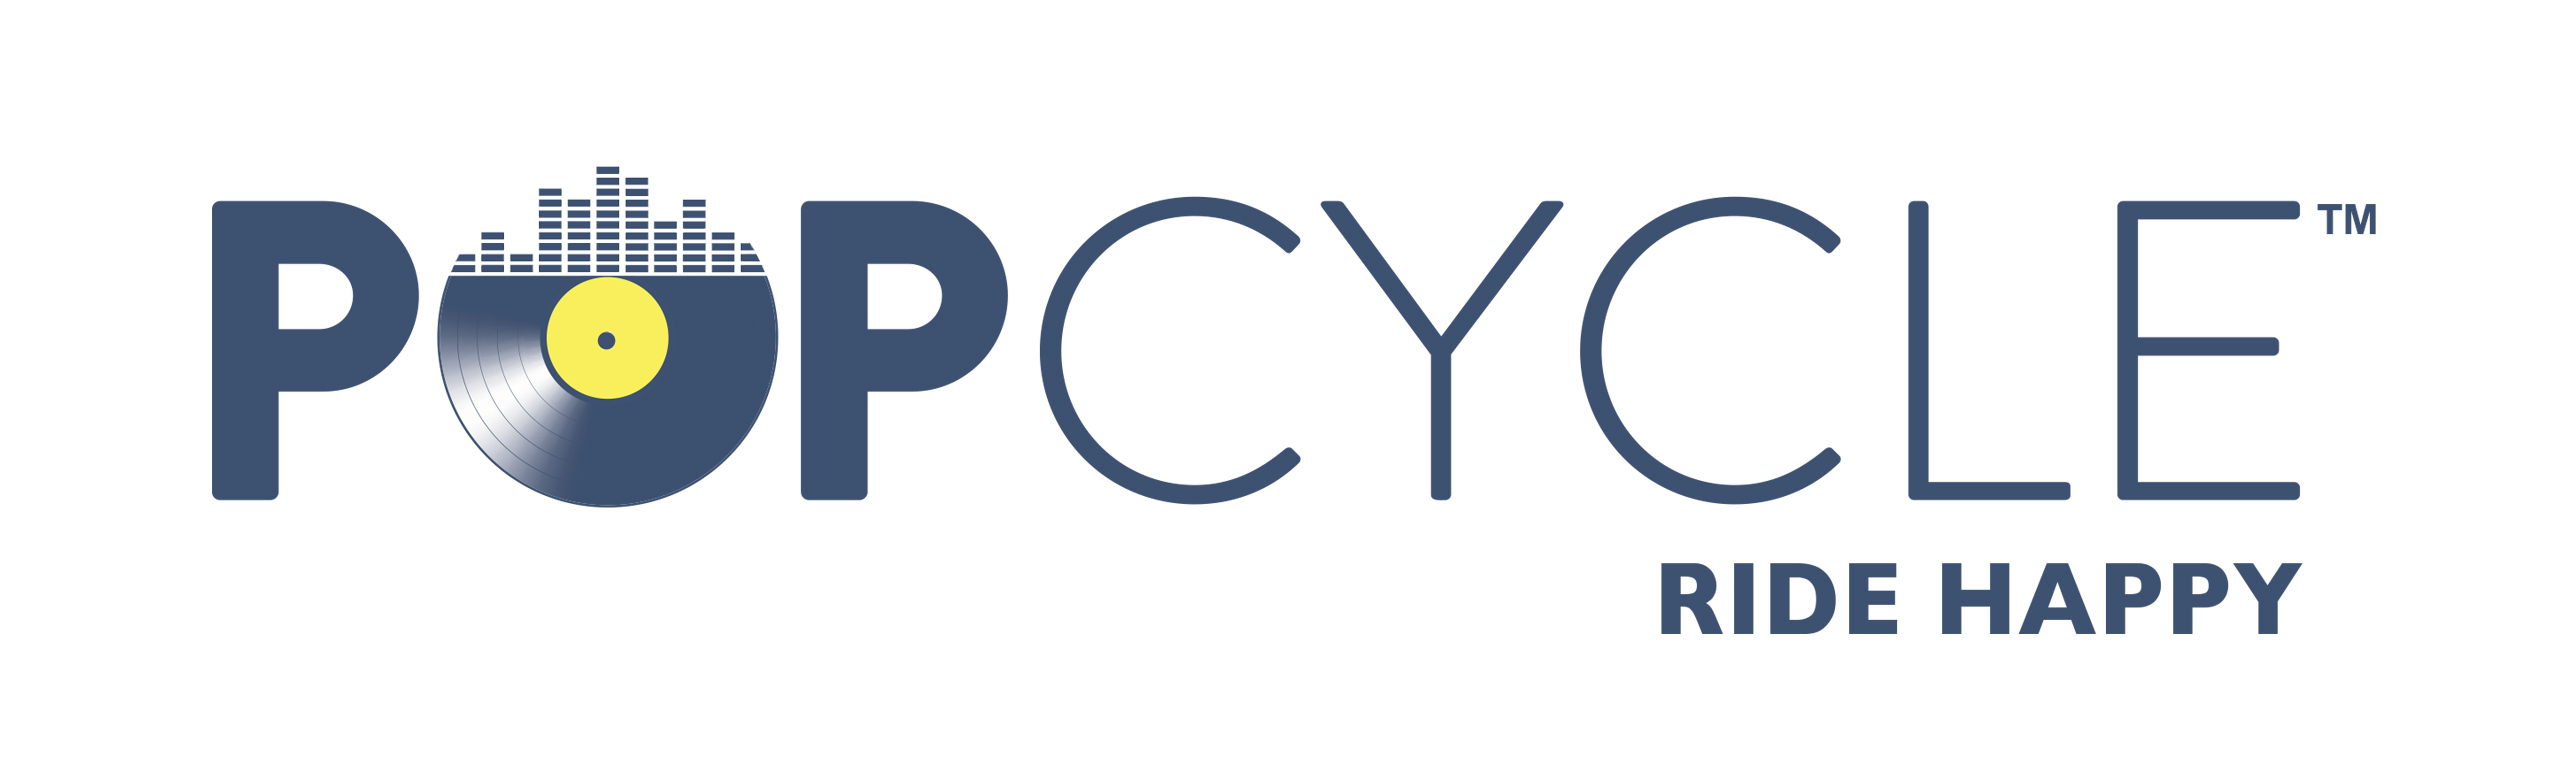 Popcycle